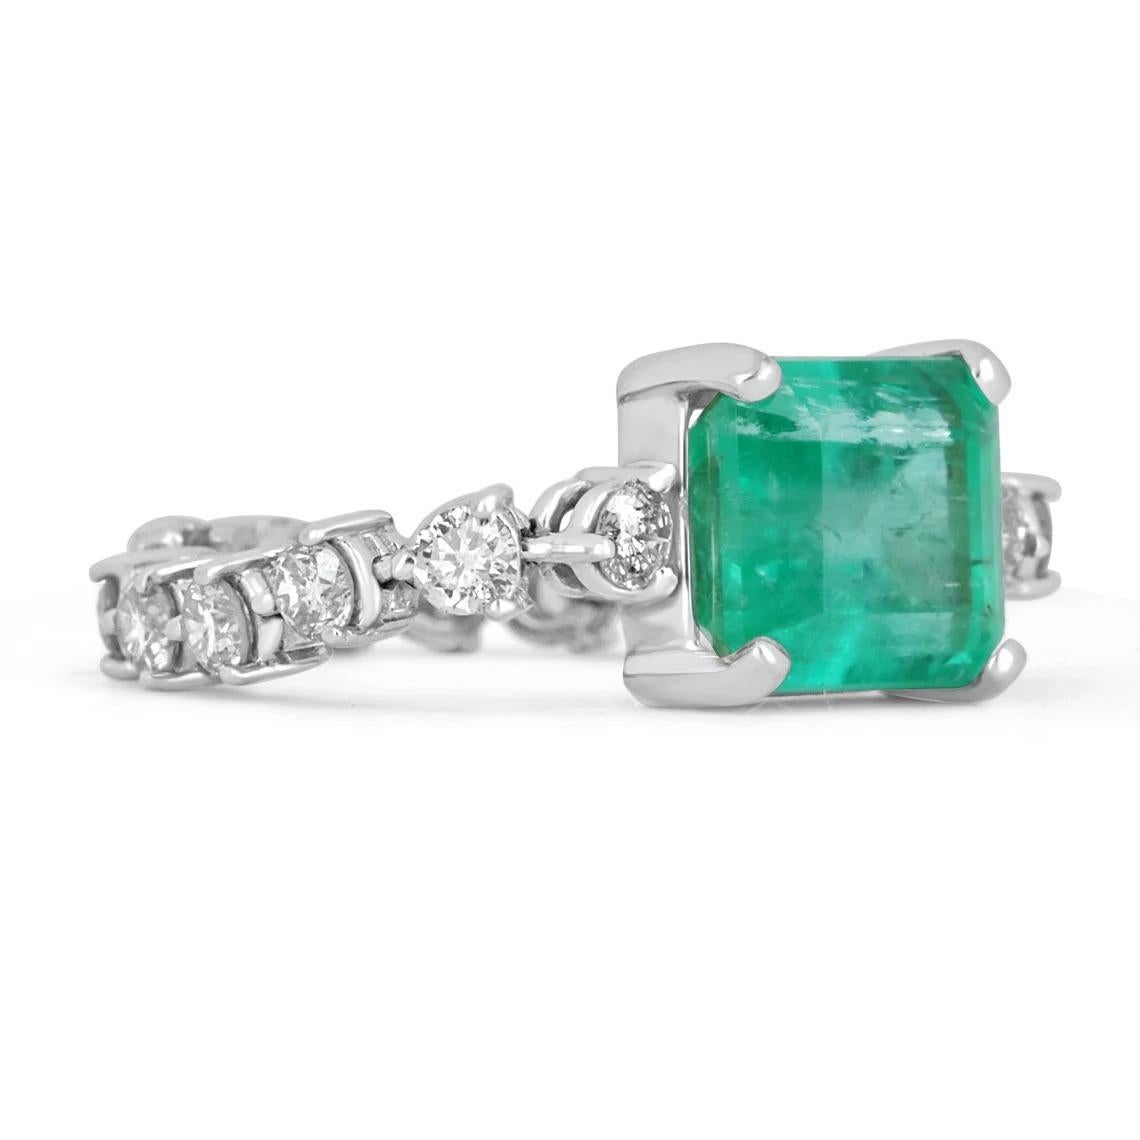 Elegant präsentiert sich ein natürlicher kolumbianischer Smaragd im Smaragdschliff und ein Diamant als Akzentring. Der zentrale Edelstein ist eine schöne Qualität, Smaragd geschnitten, Smaragd mit Leben und Brillanz gefüllt! Unter den Smaragden